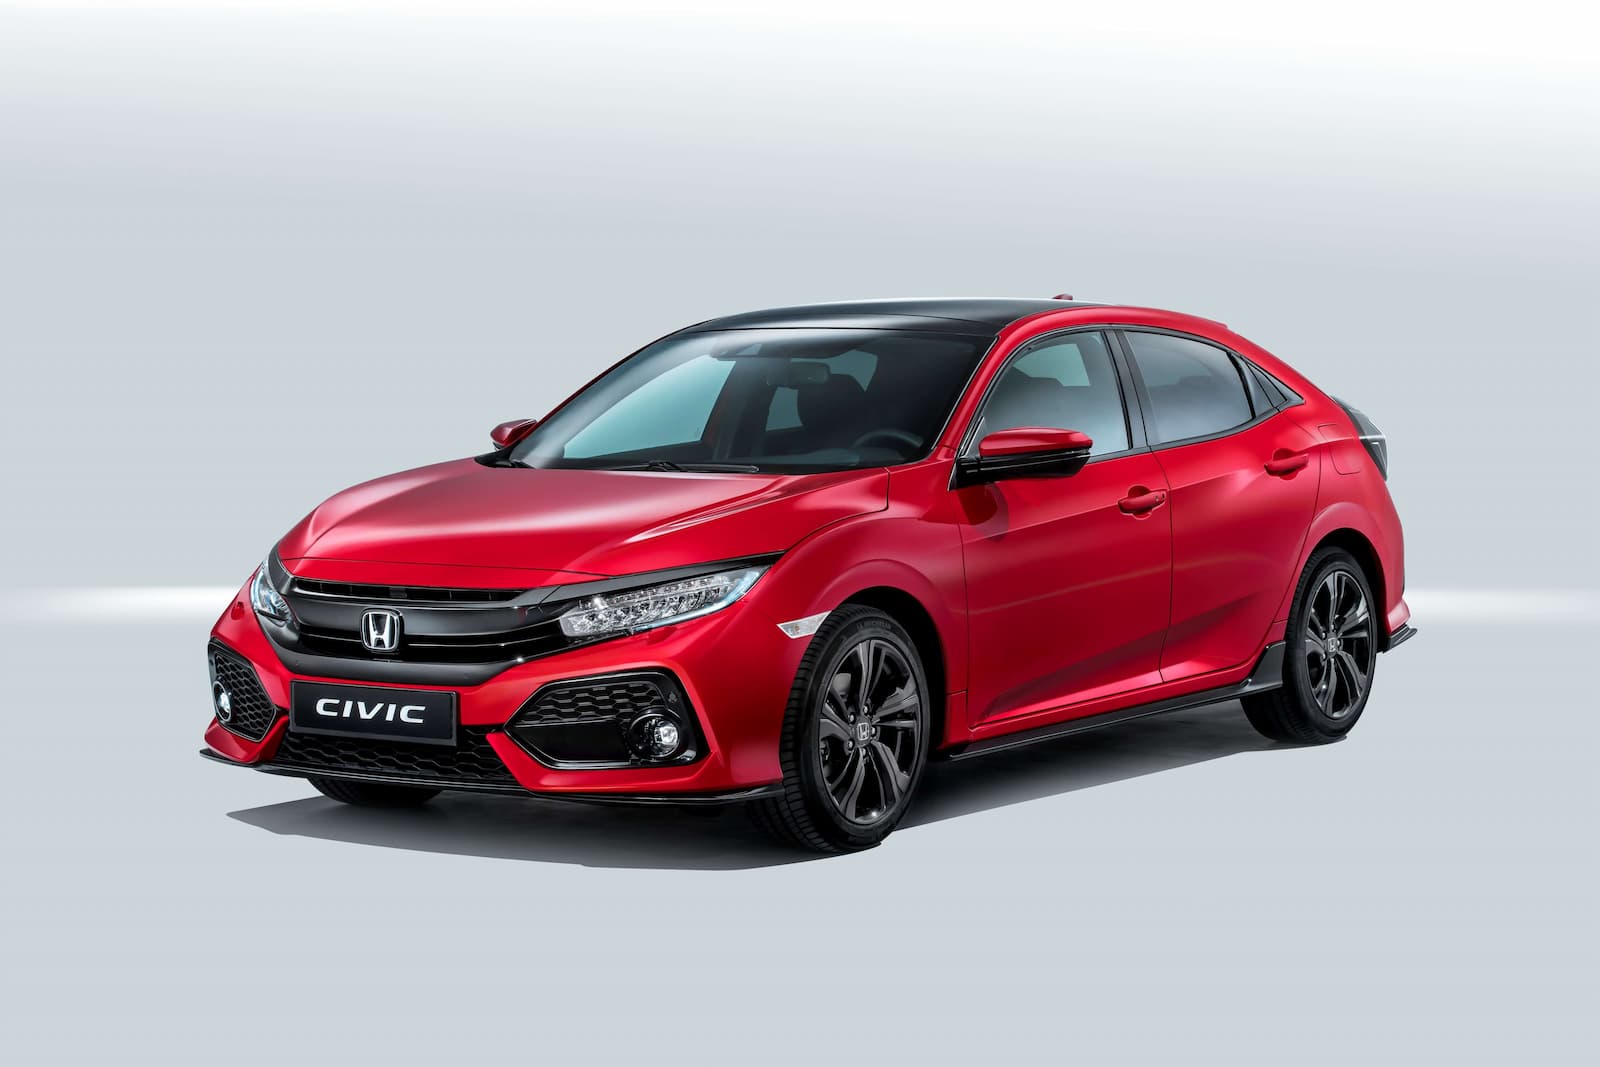 Honda Civic nouveau modèle 2017